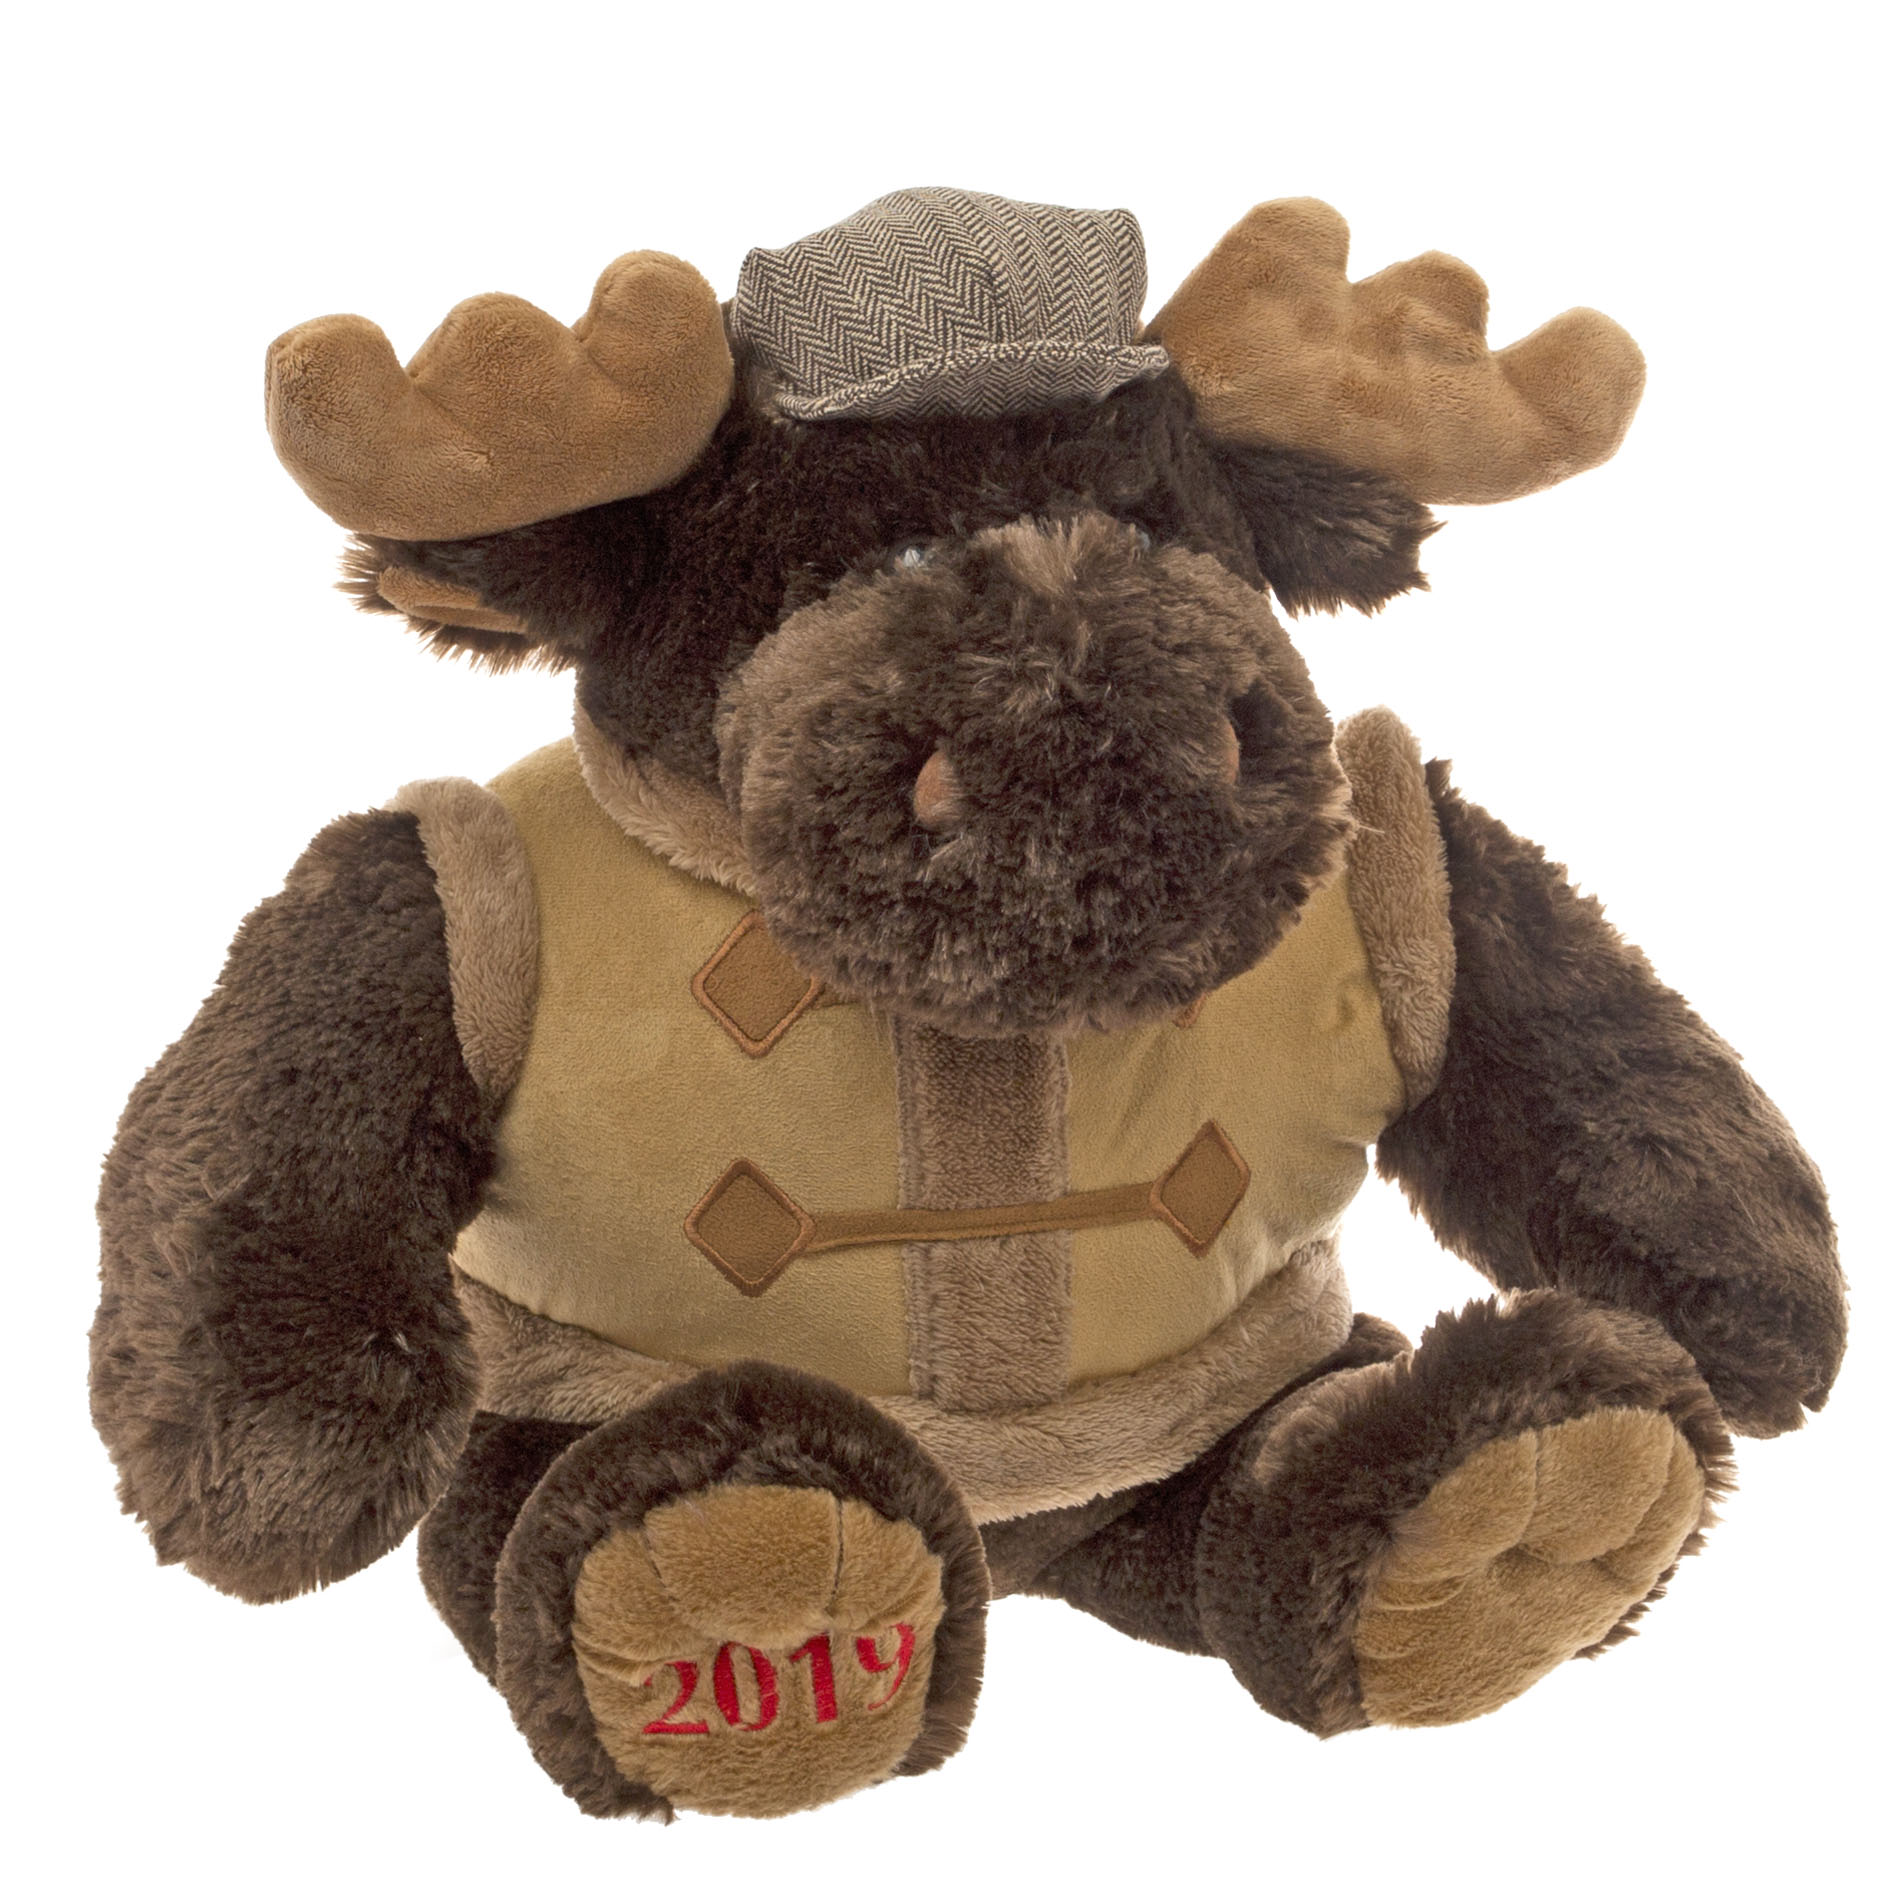 Roebuck & Co. Moose 2019 Christmas Collectible